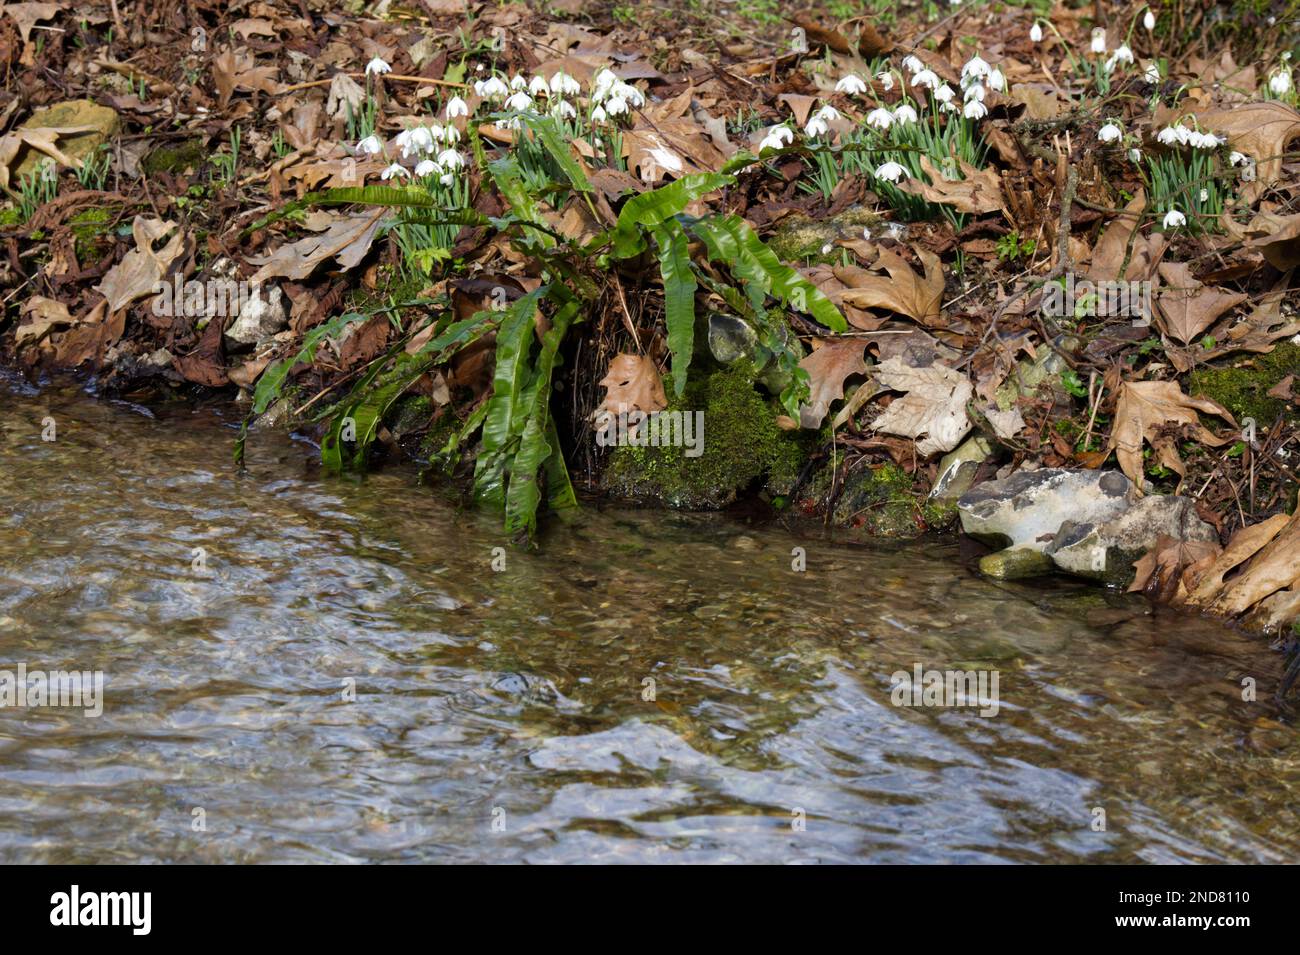 Una banca di innevamenti in fiore d'inverno, galanthus nivalis, e hart lingua felce, Asplenium accanto a un ruscello in un giardino boschivo UK febbraio Foto Stock